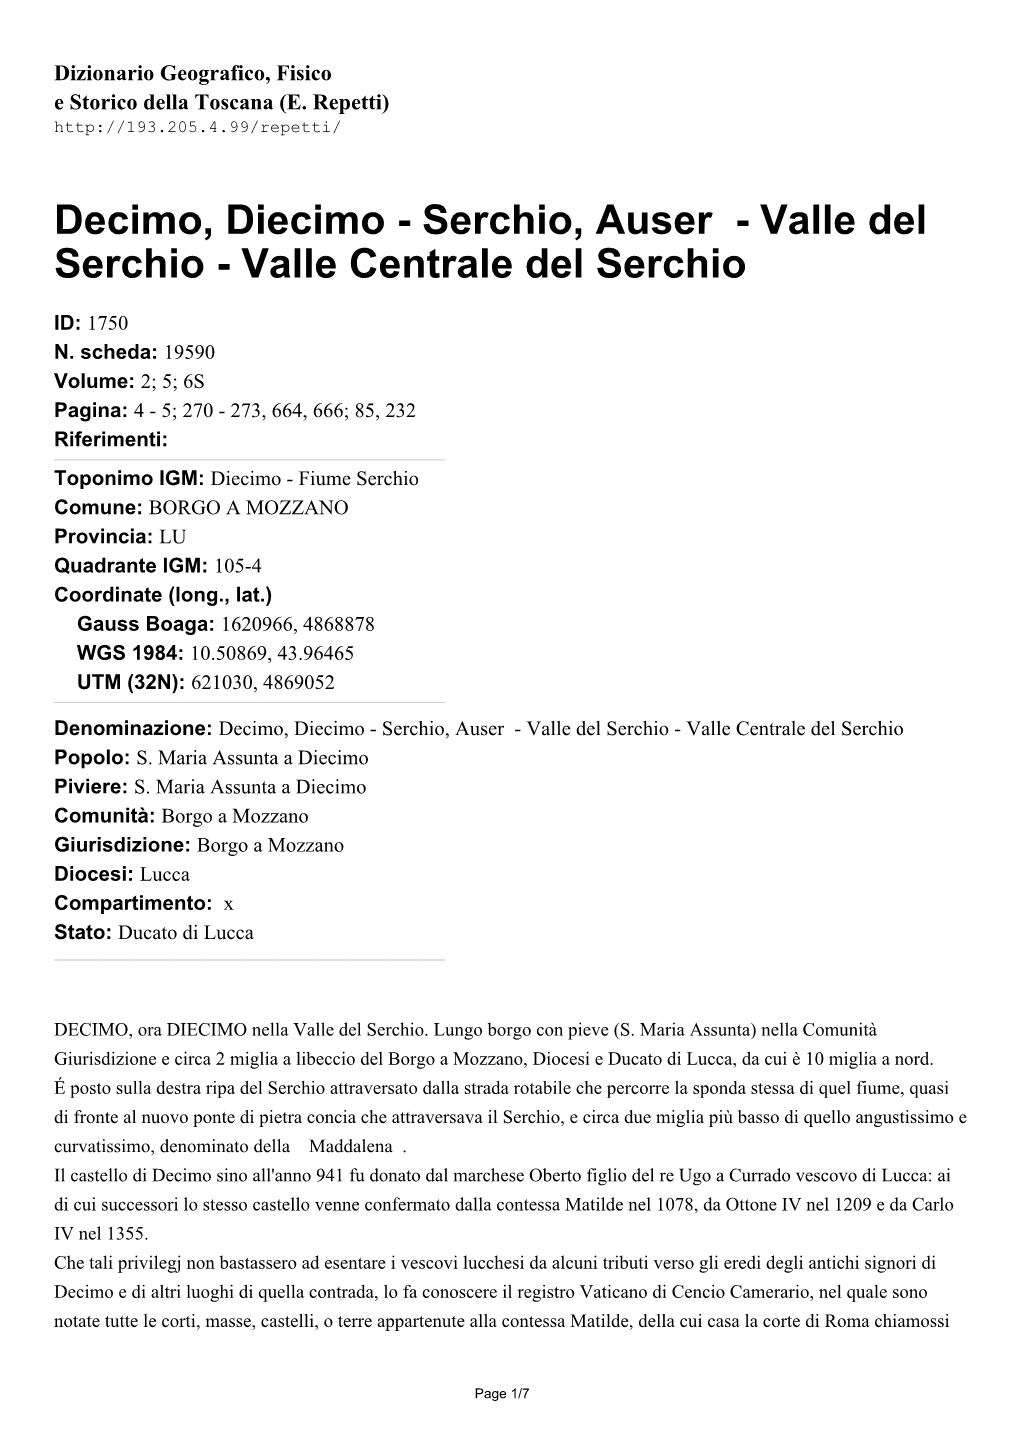 Decimo, Diecimo - Serchio, Auser - Valle Del Serchio - Valle Centrale Del Serchio